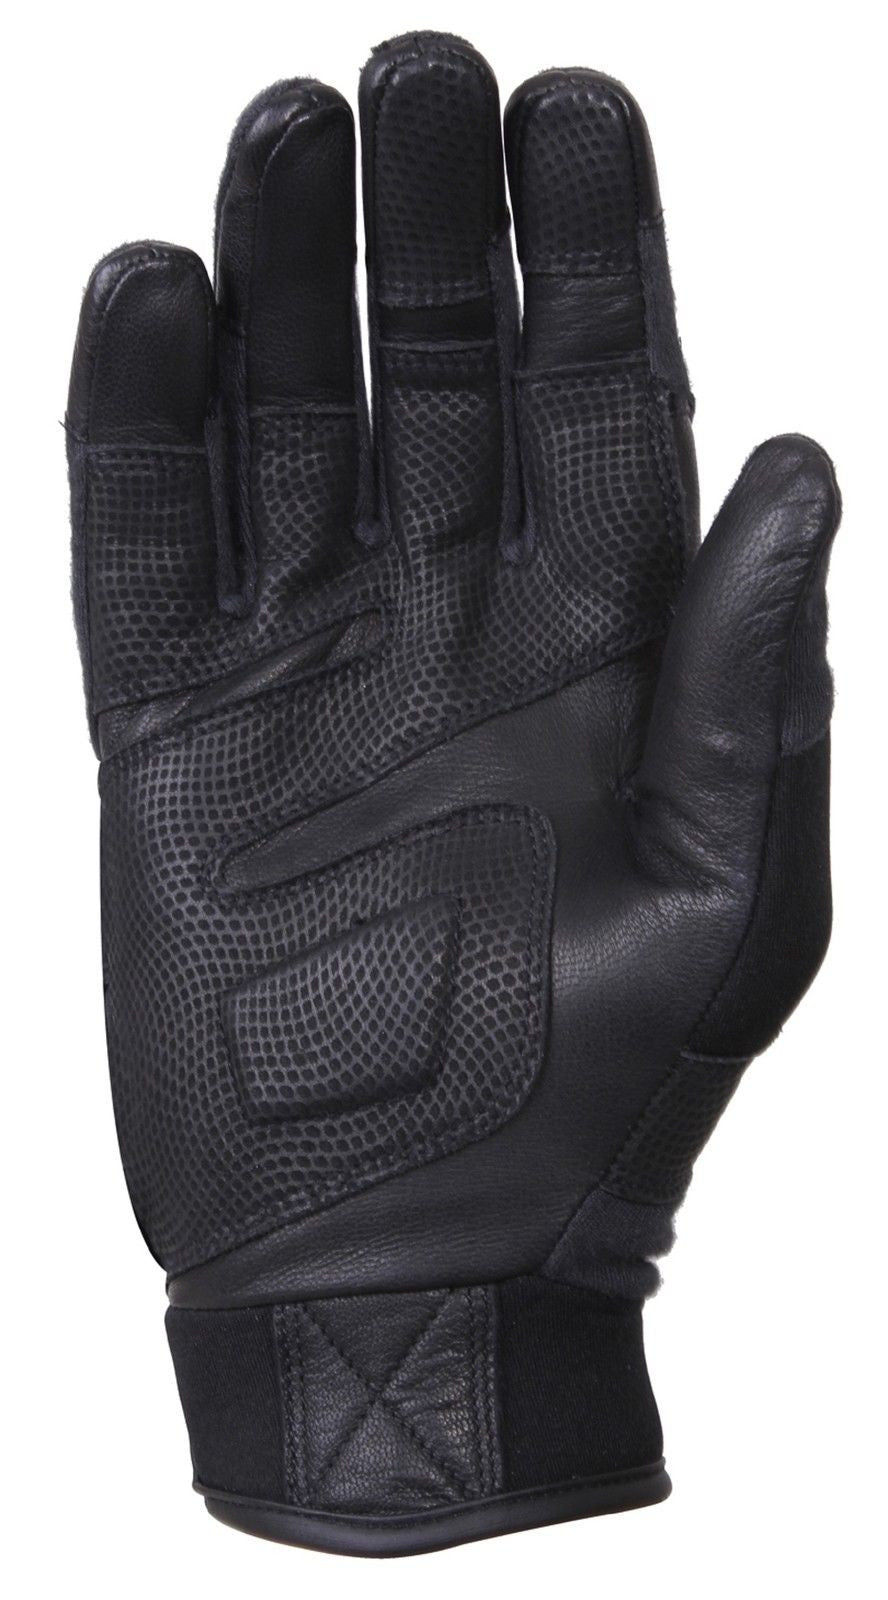 Carbon Fiber Hard Knuckle Tactical Gloves - Rothco Black Gloves